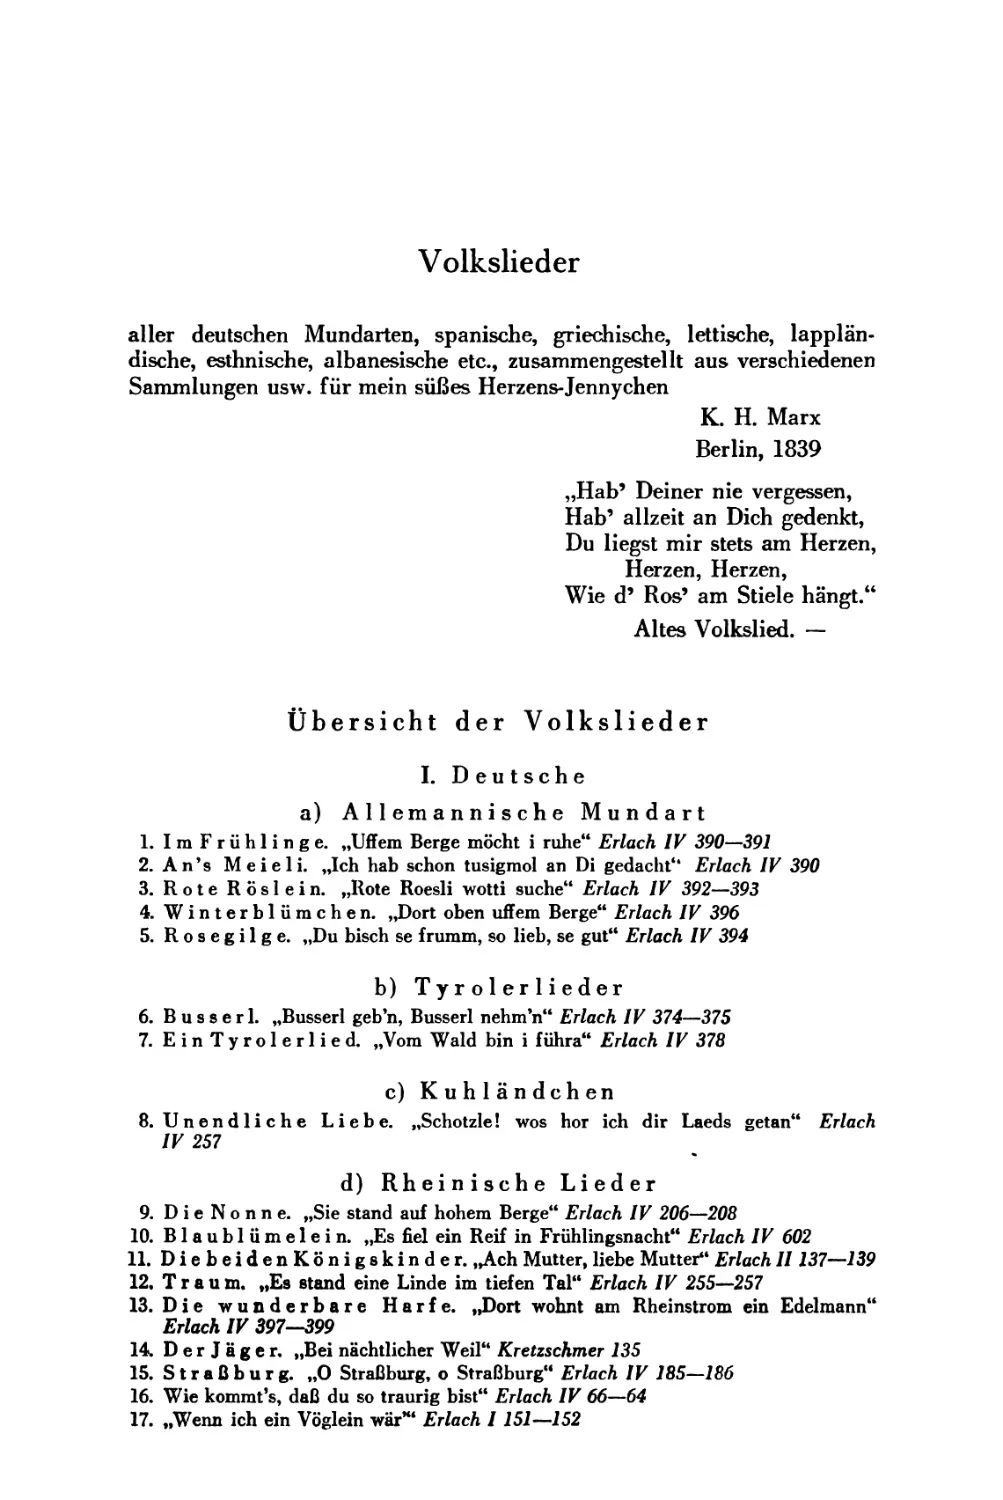 Volksliedersammlung zusammengestellt von Marx Berlin 1839